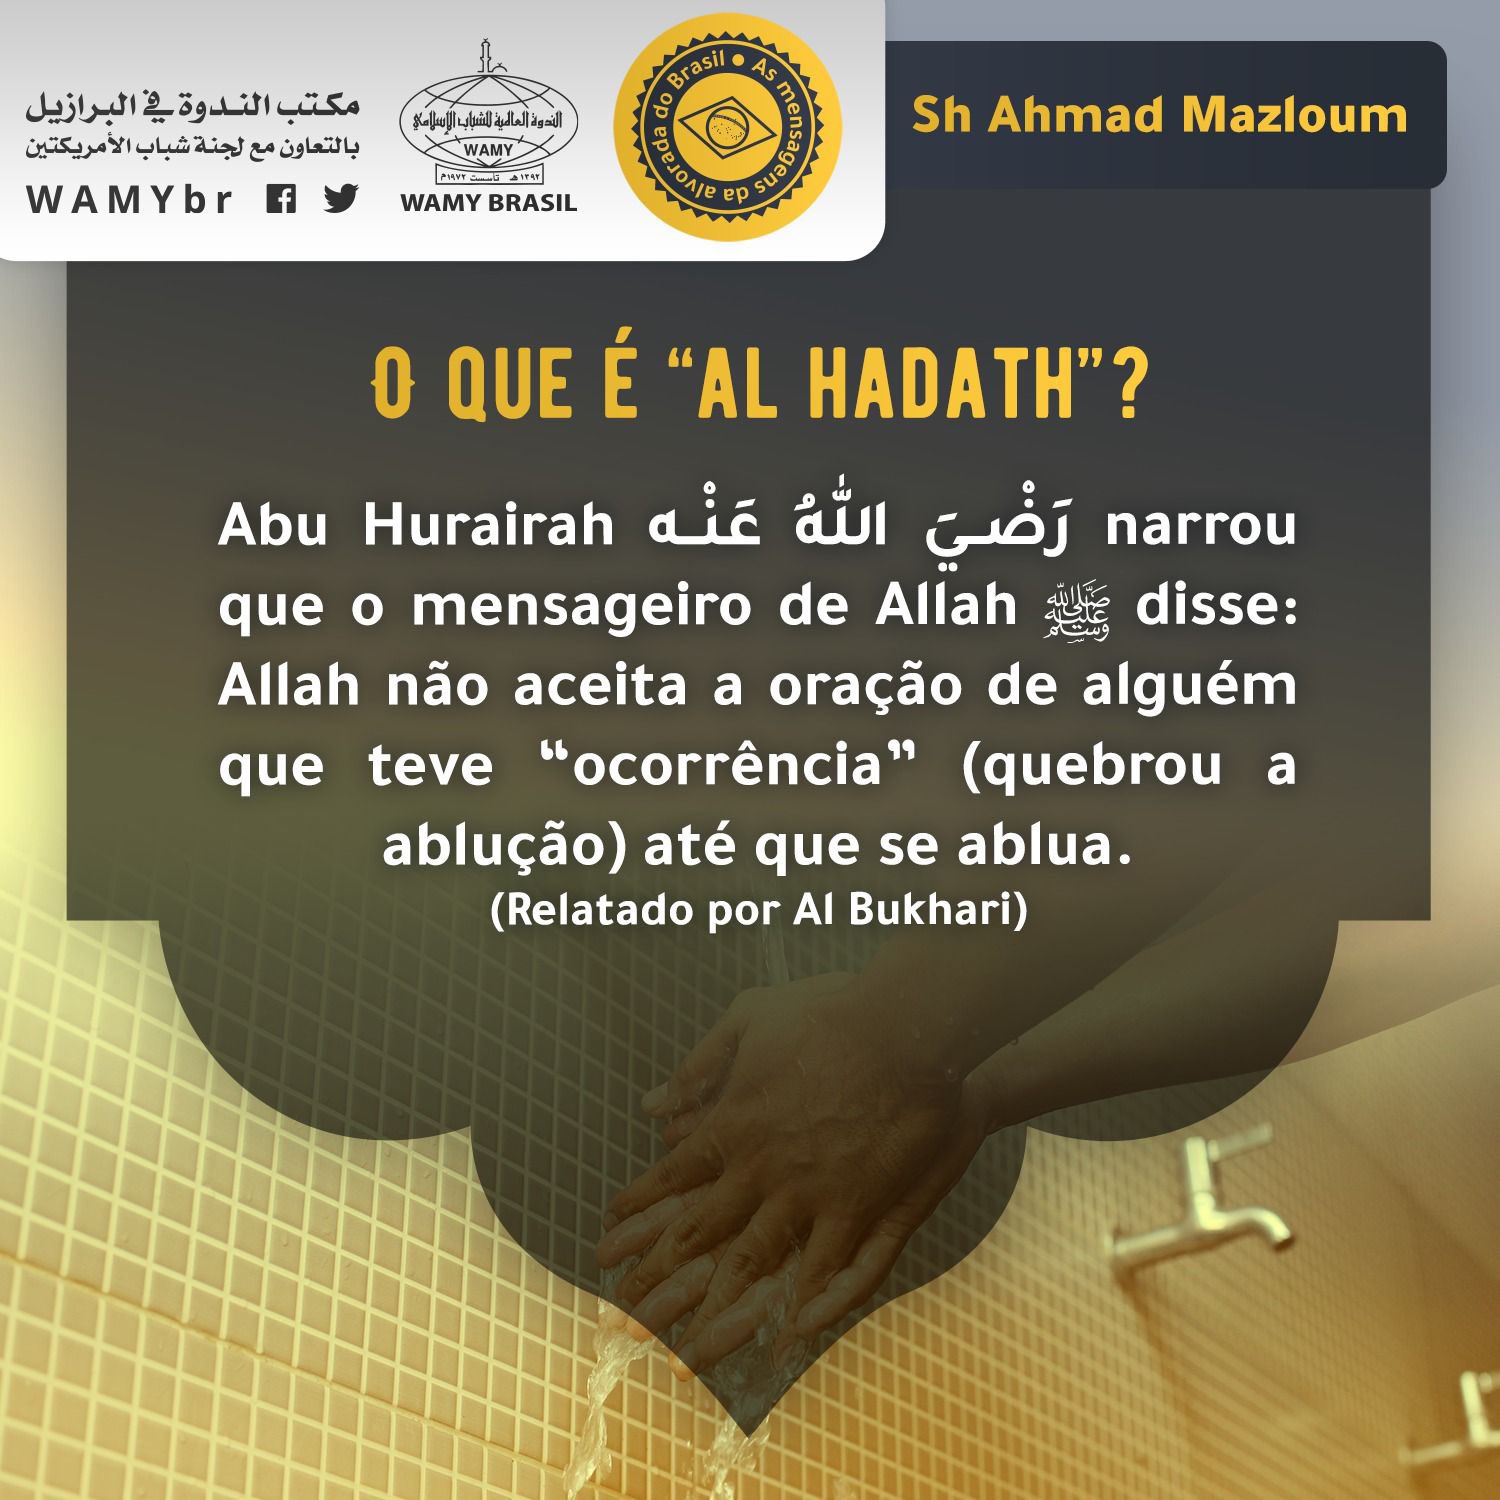 O que é “al hadath”?